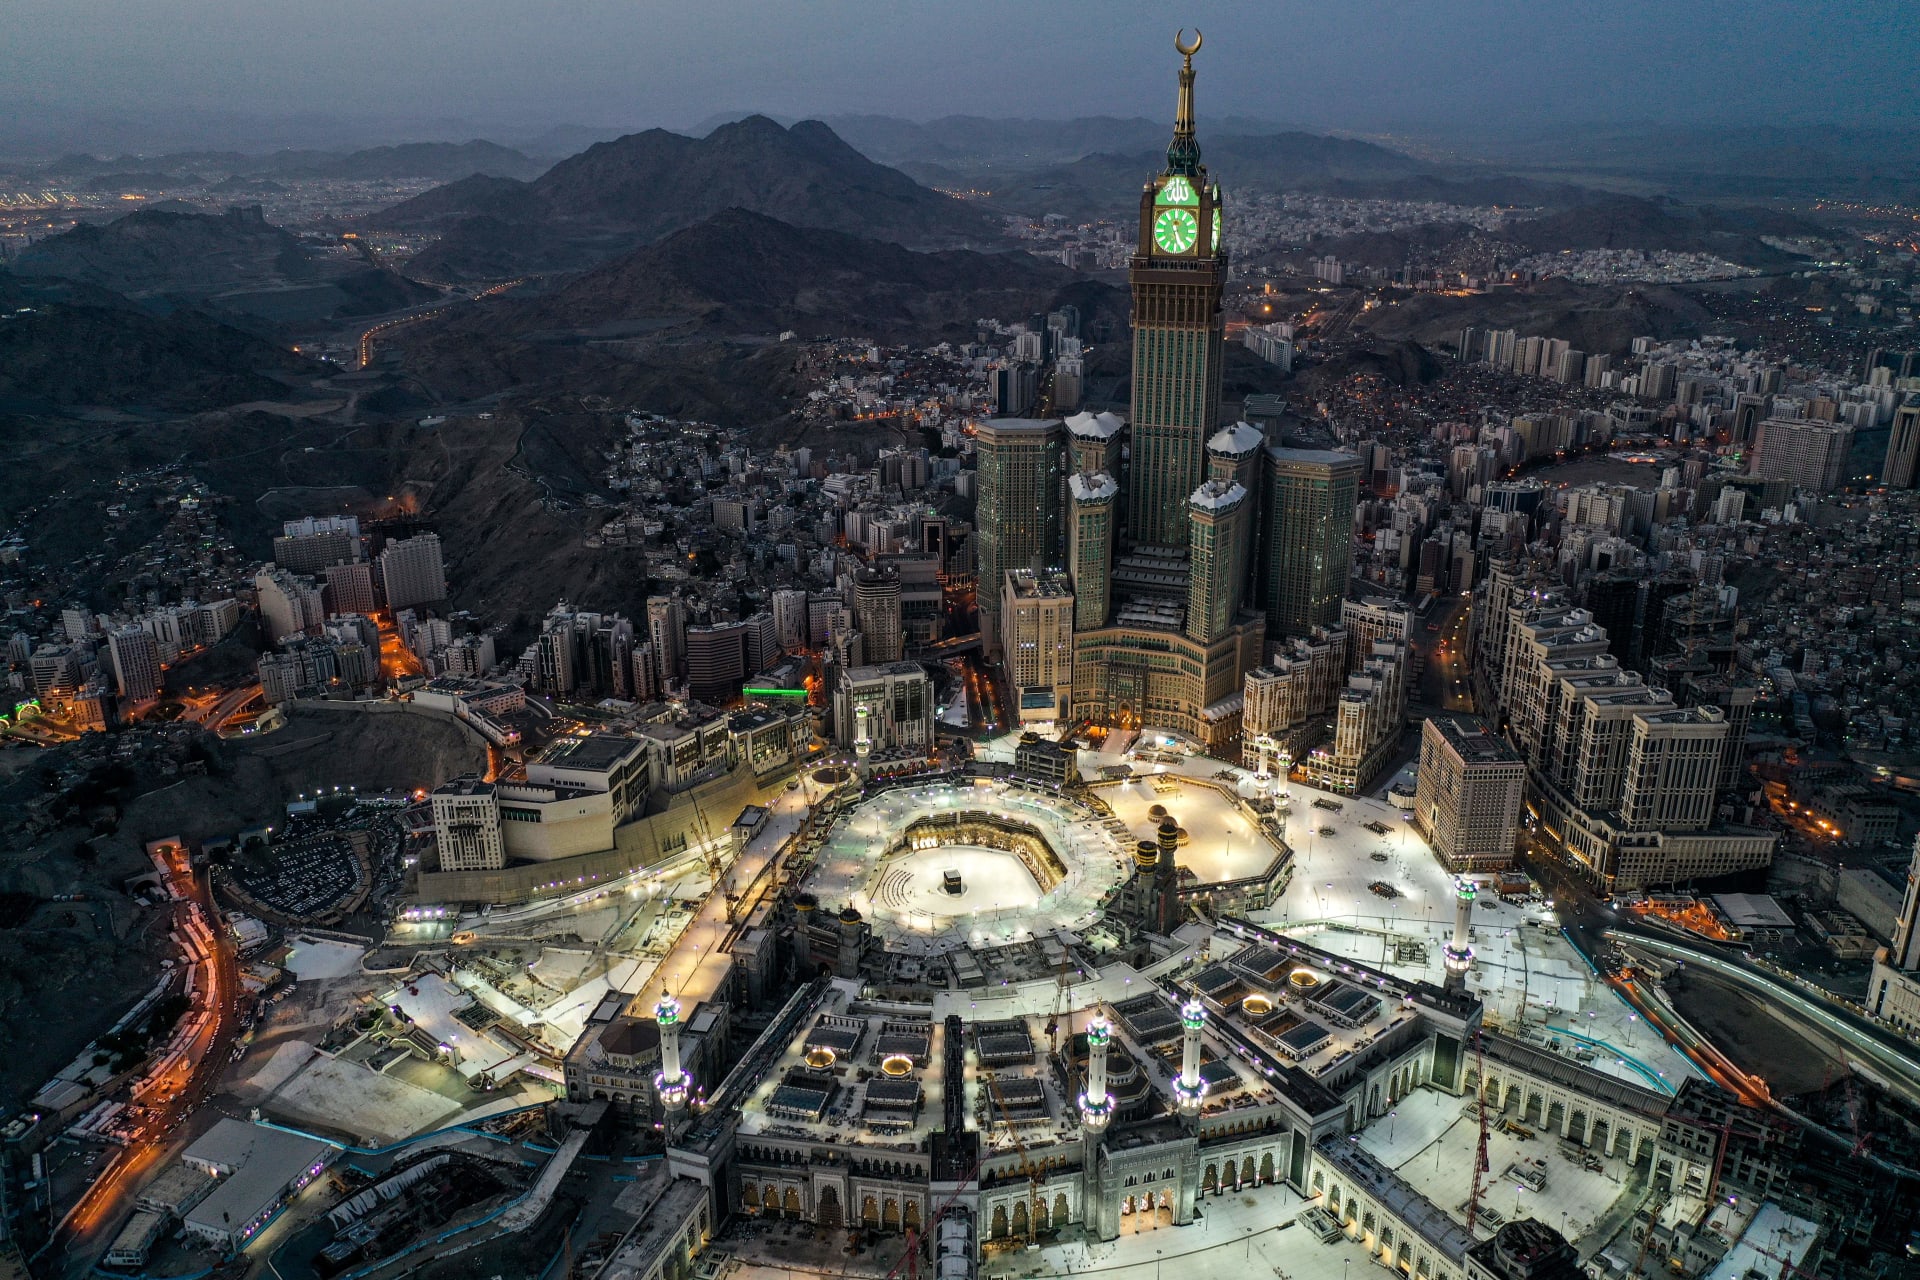 أكاديمي ينتقد تصميم المباني المحيطة بالحرم المكي ويهاجم الحكومة السعودية: ذوق لاس فيغاس "المبتذل" في مكة